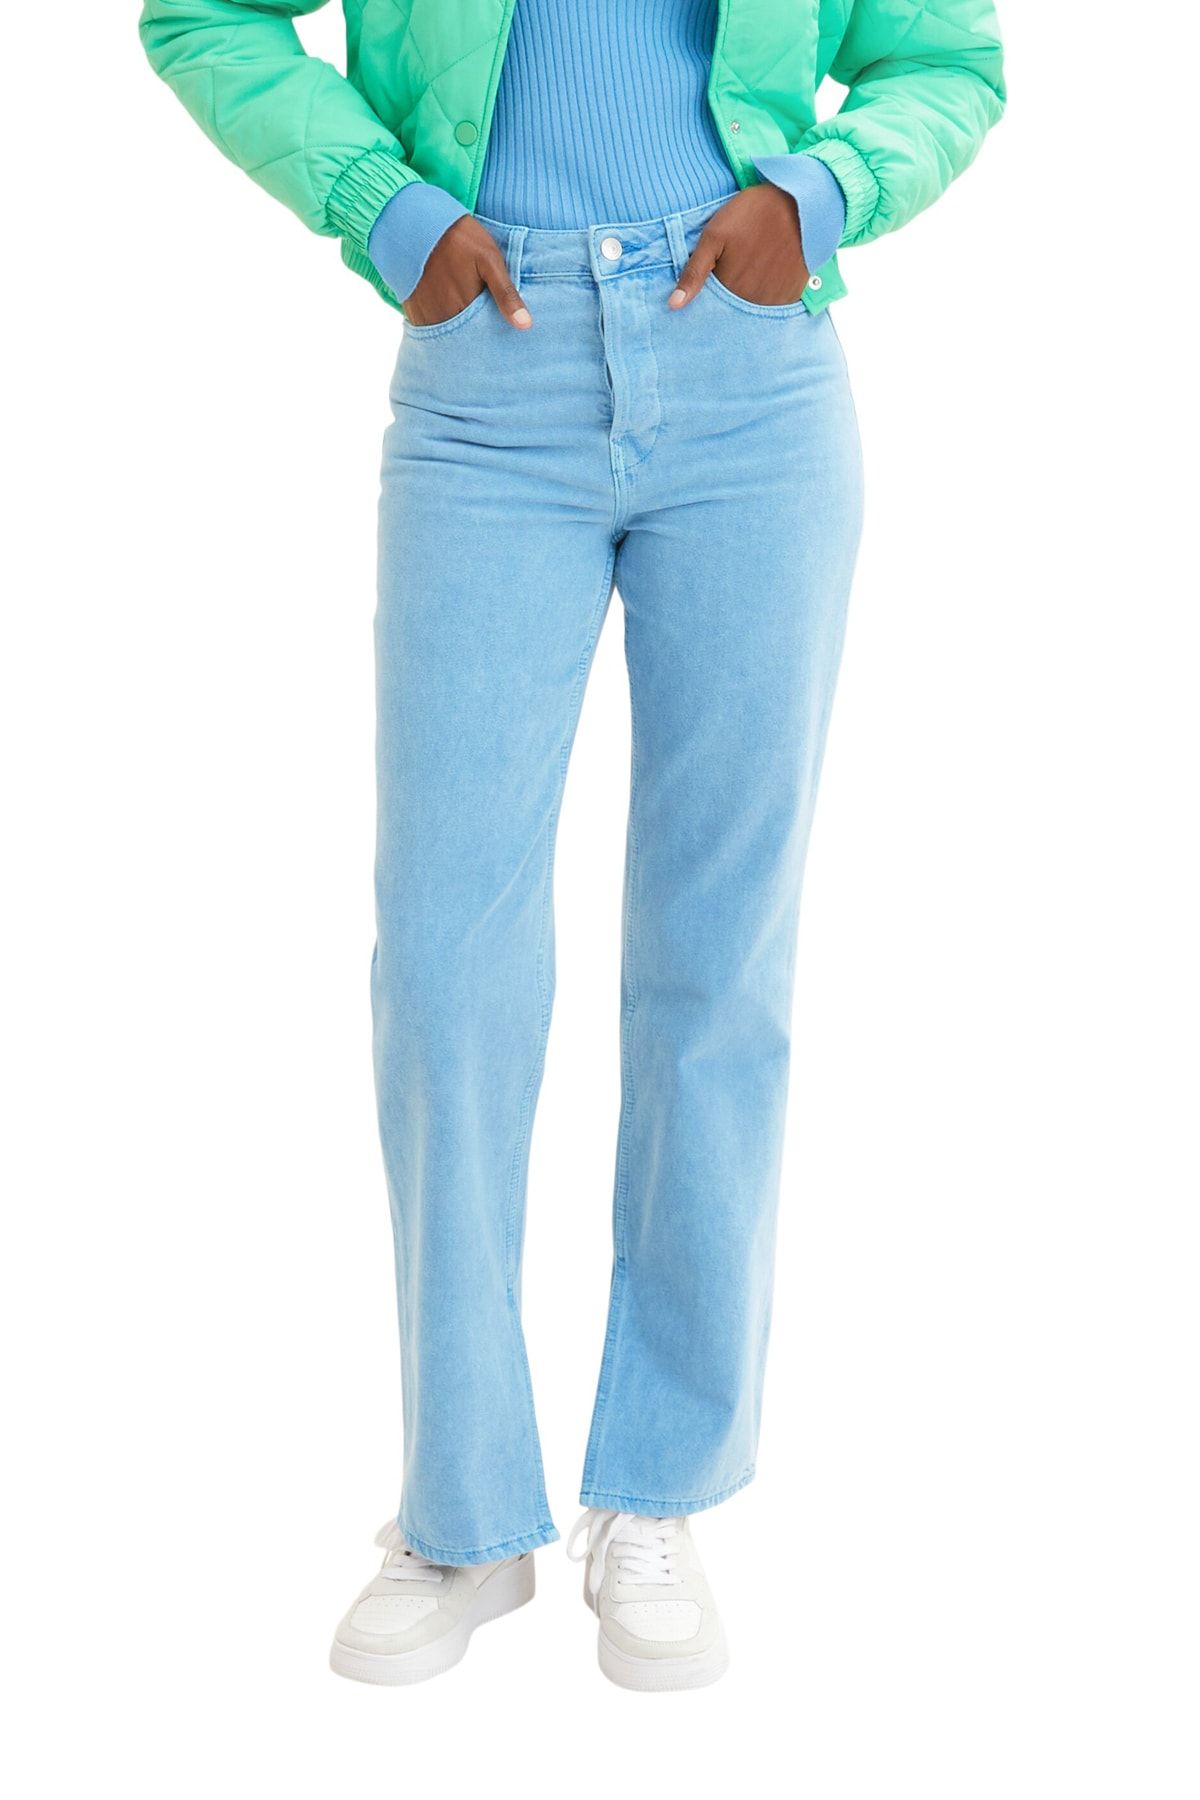 Tom Tailor Denim Jeans - Blue - Straight - Trendyol